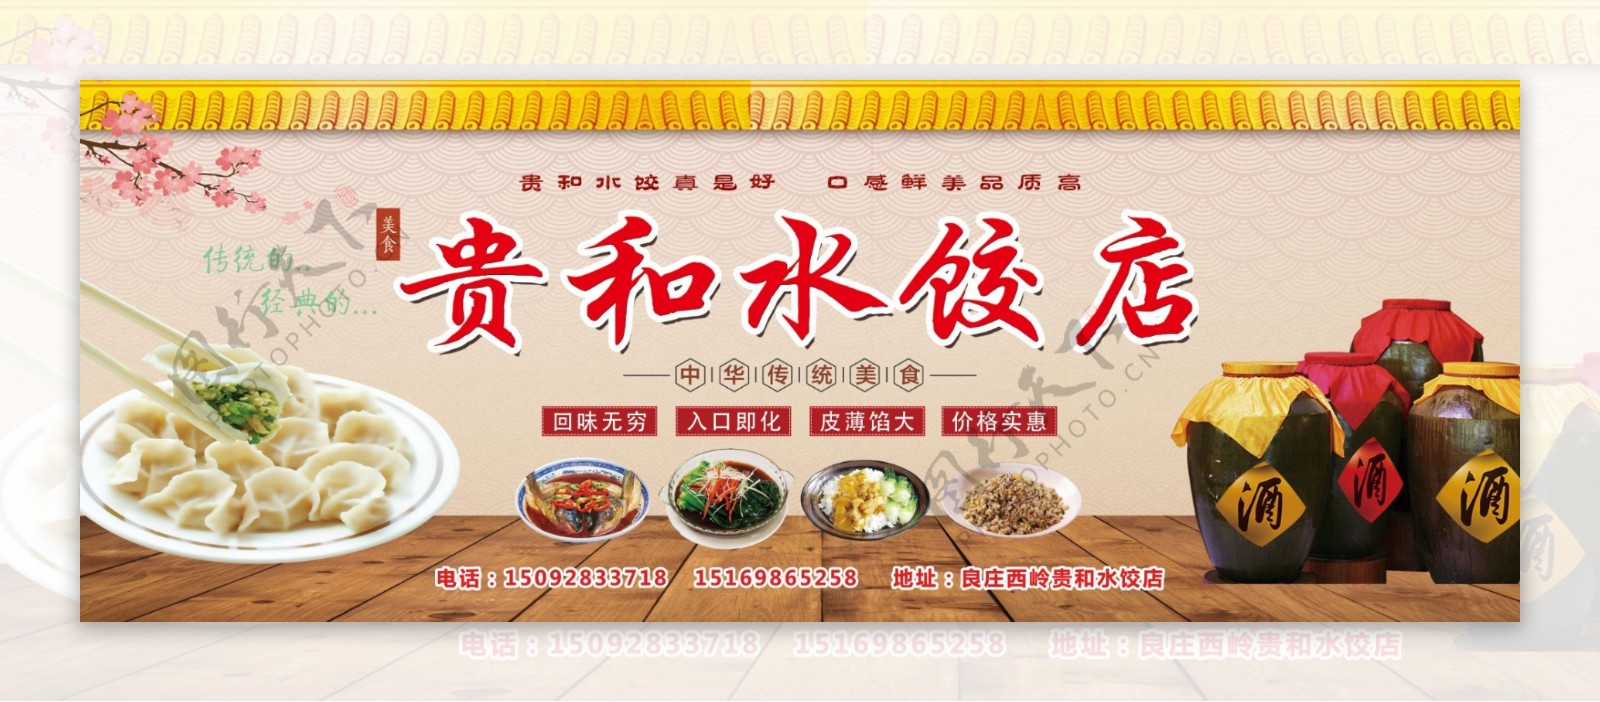 水饺店海报